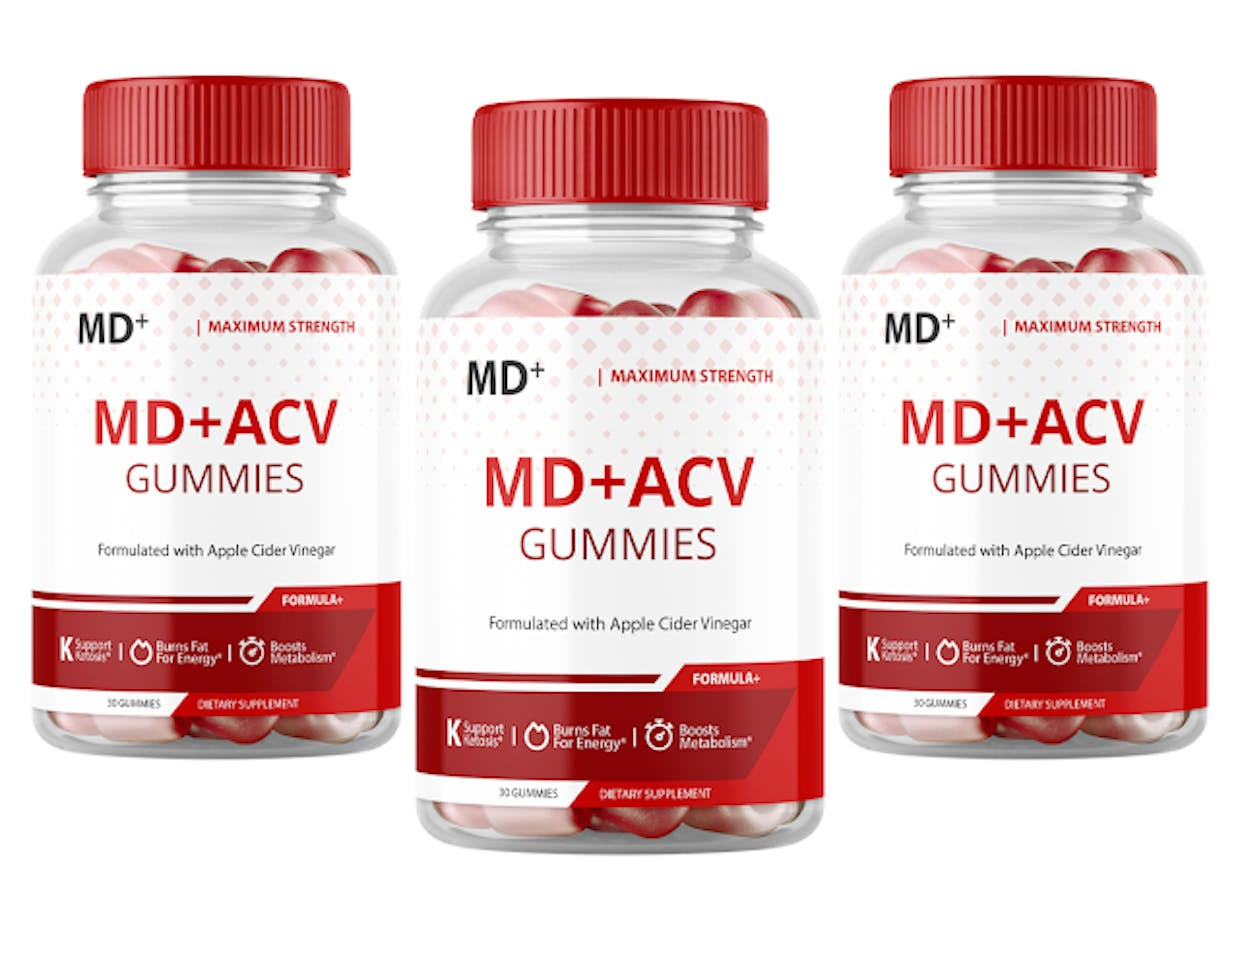 MD+ ACV Gummies New Zealand - ingredients, effects, Work & price -  Sunflower-CISSP.com